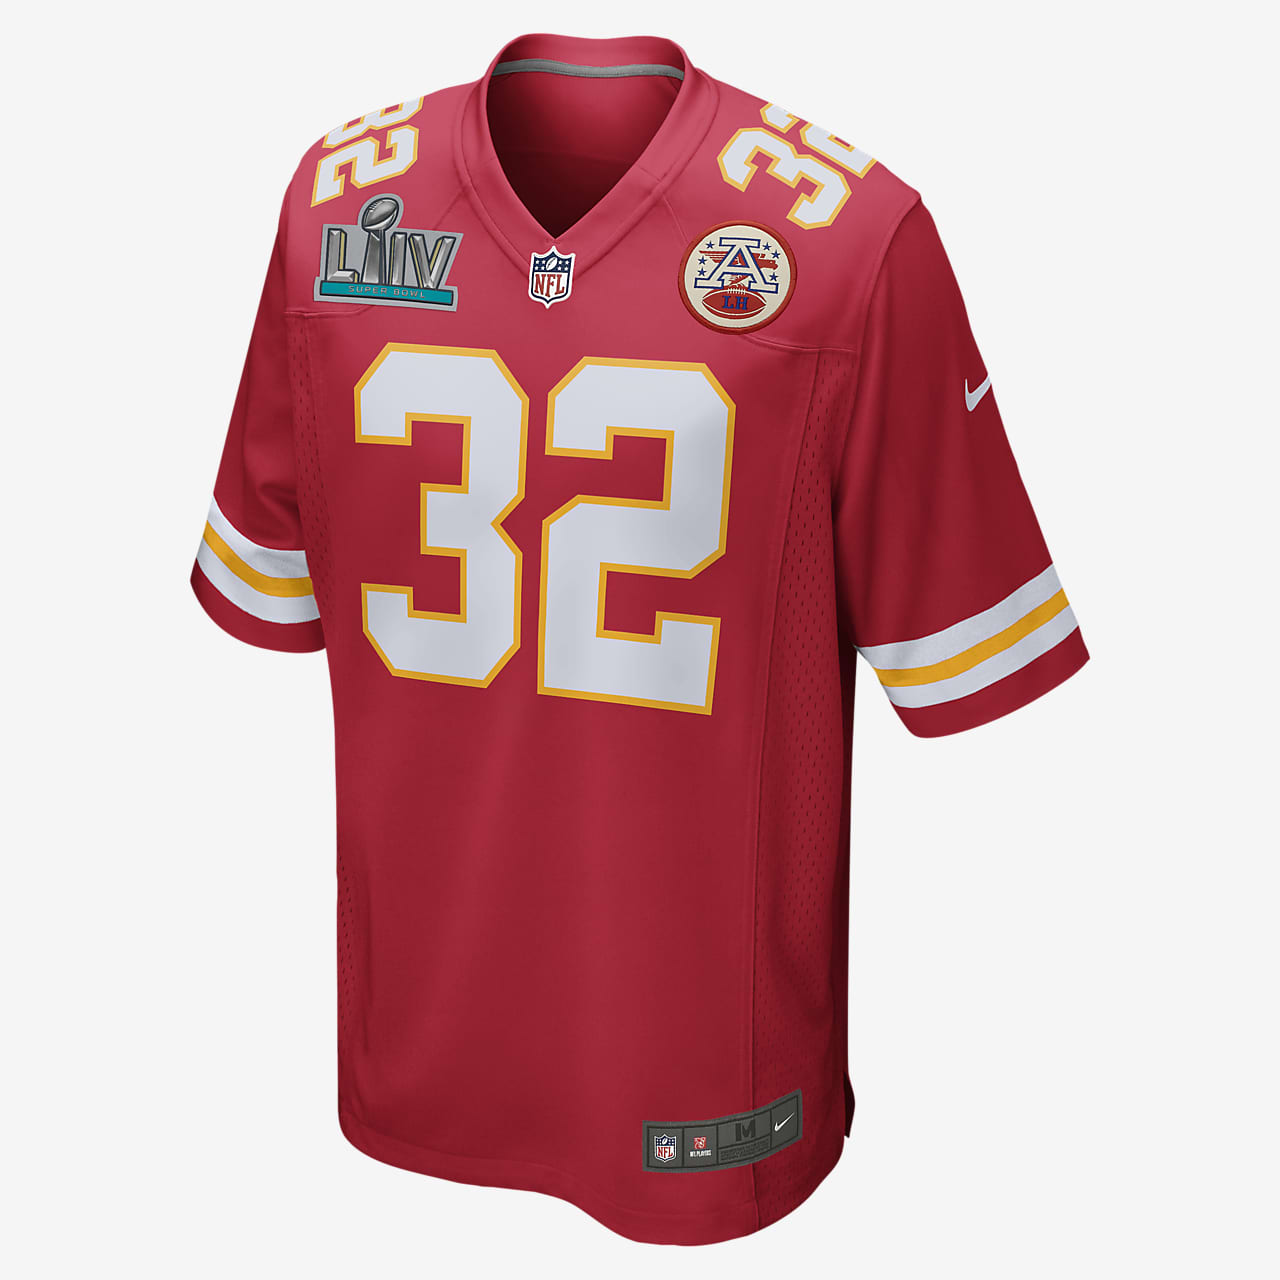 Camiseta de americano hombre NFL Kansas City Super Bowl (Tyrann Mathieu). Nike.com